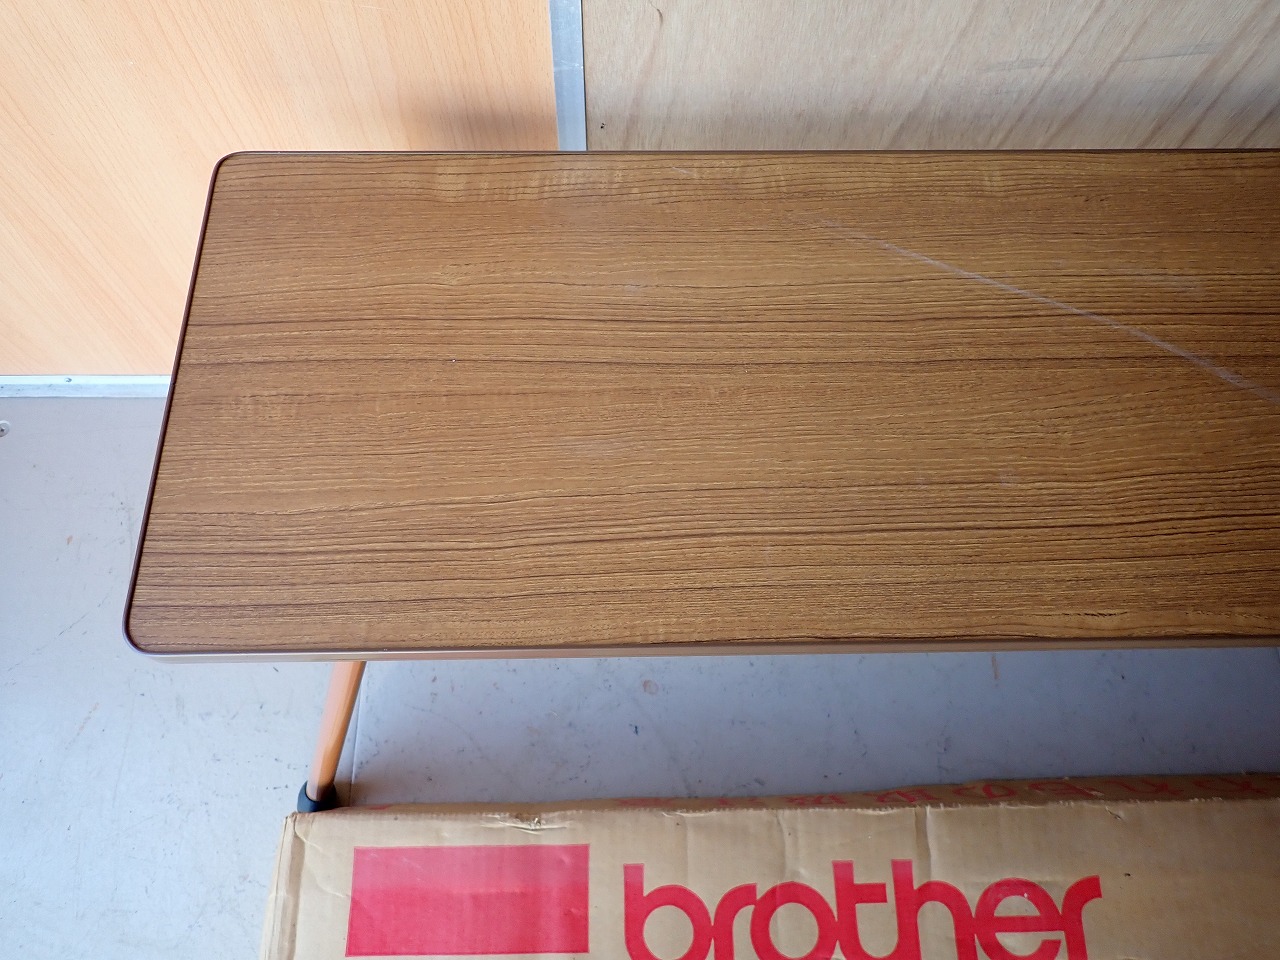 編台 brother 465201-011 ブラザー 編み機 テーブル 折りたたみ 木製 - リサイクルショップ良品企画-買取実績